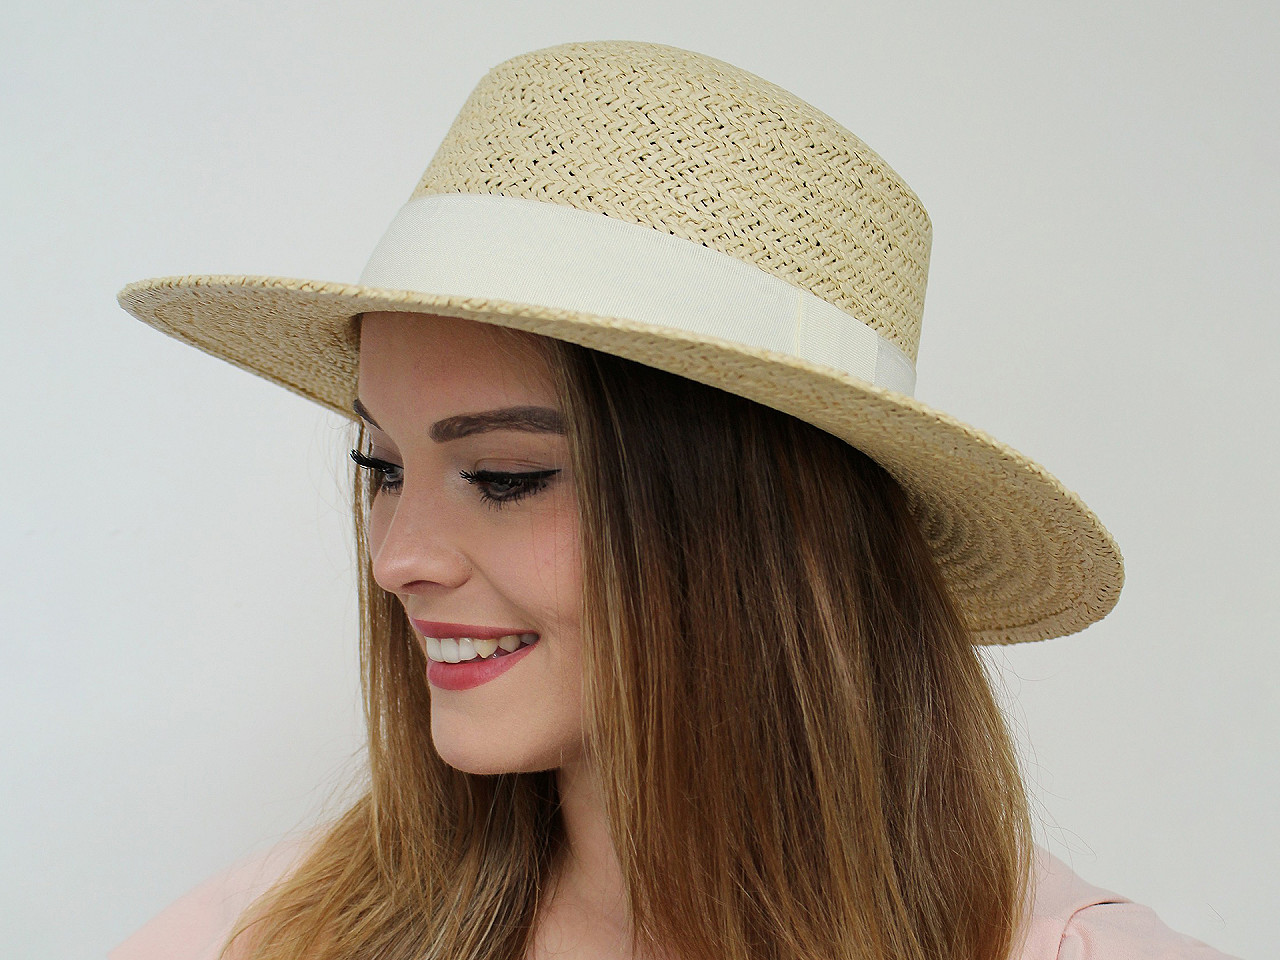 Pălărie de vară pentru femei / pălărie de paie, 1 buc.